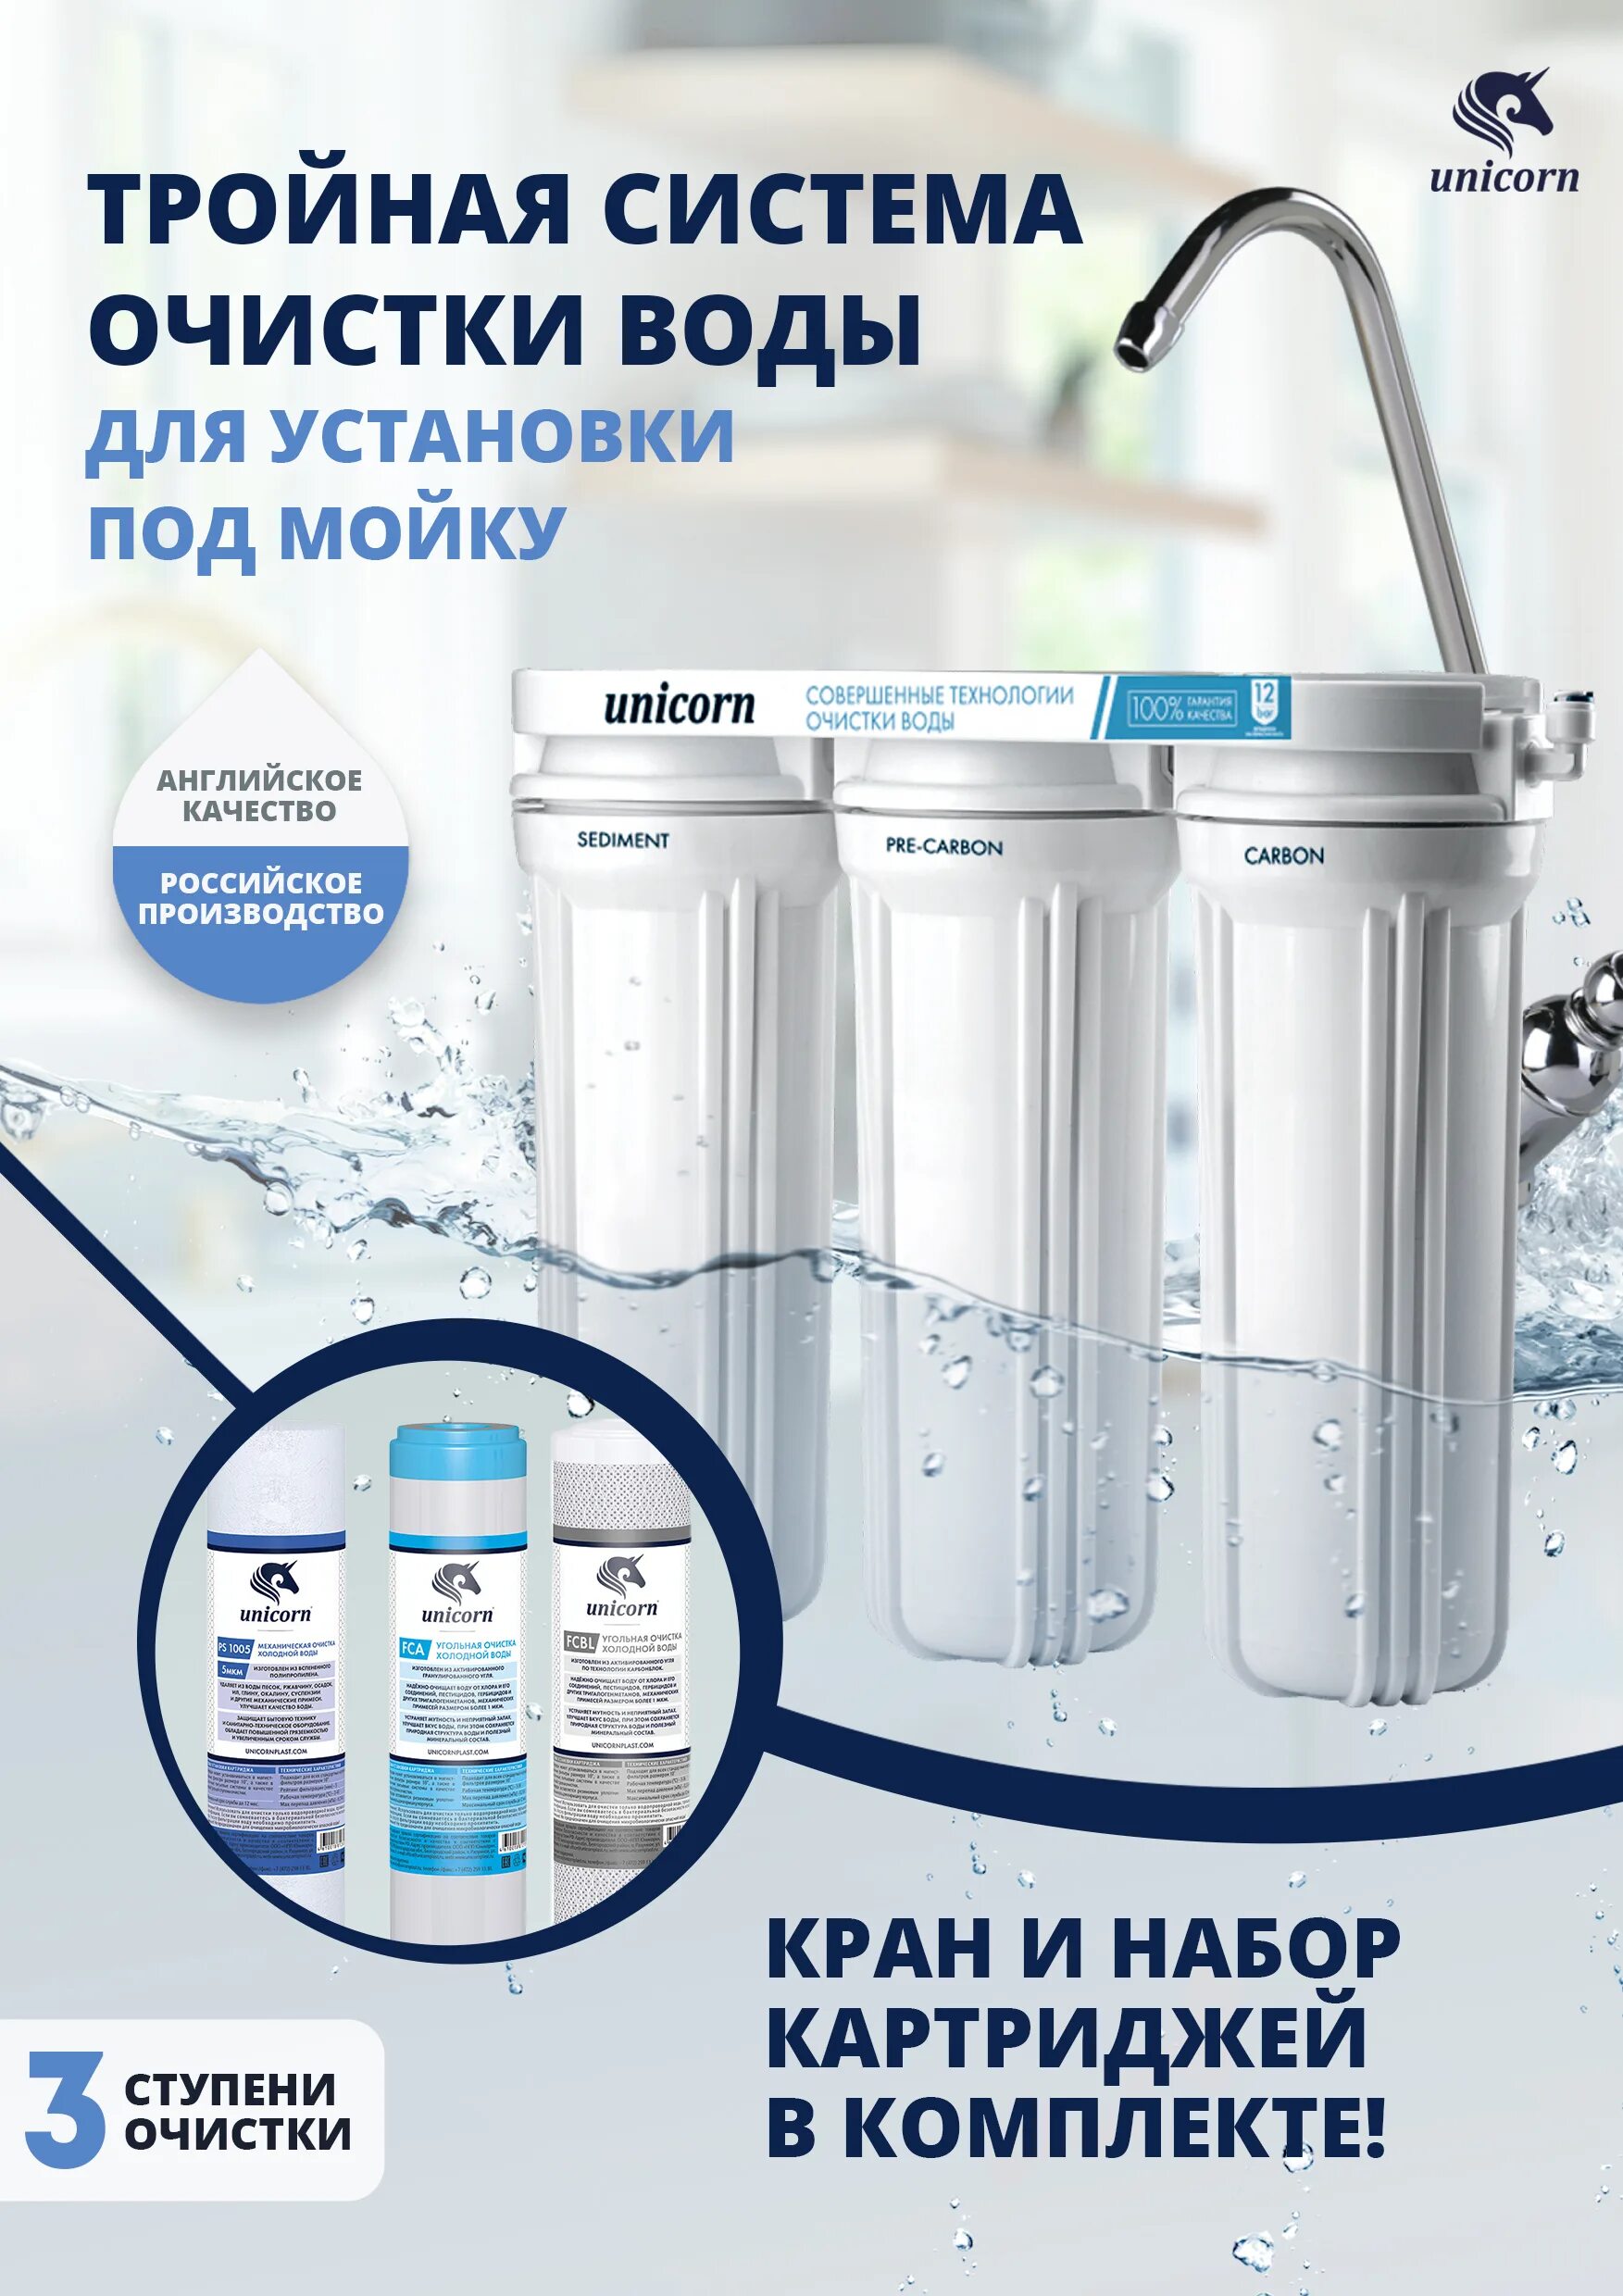 Трехступенчатый фильтр для воды Unicorn fps-3 St. PUREPRO система очистки воды. Фильтр для воды тройная очистка. Картридж очистки для воды Unicorn. Unicorn очистка воды